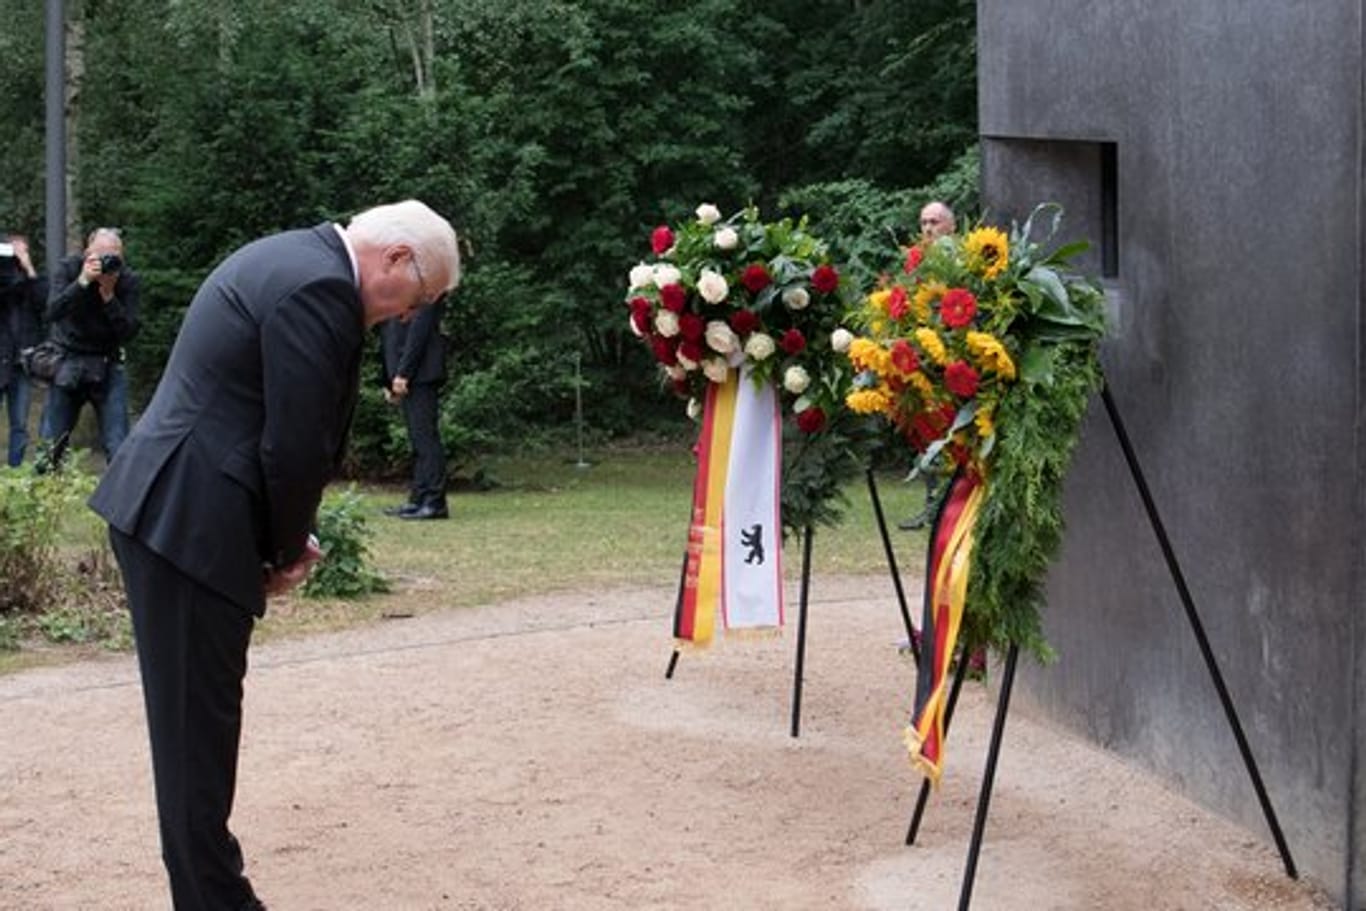 Bundespräsident Steinmeier verneigt sich nach einem Festakt im Tiergarten vor dem Denkmal für die im Nationalsozialismus verfolgten Homosexuellen.